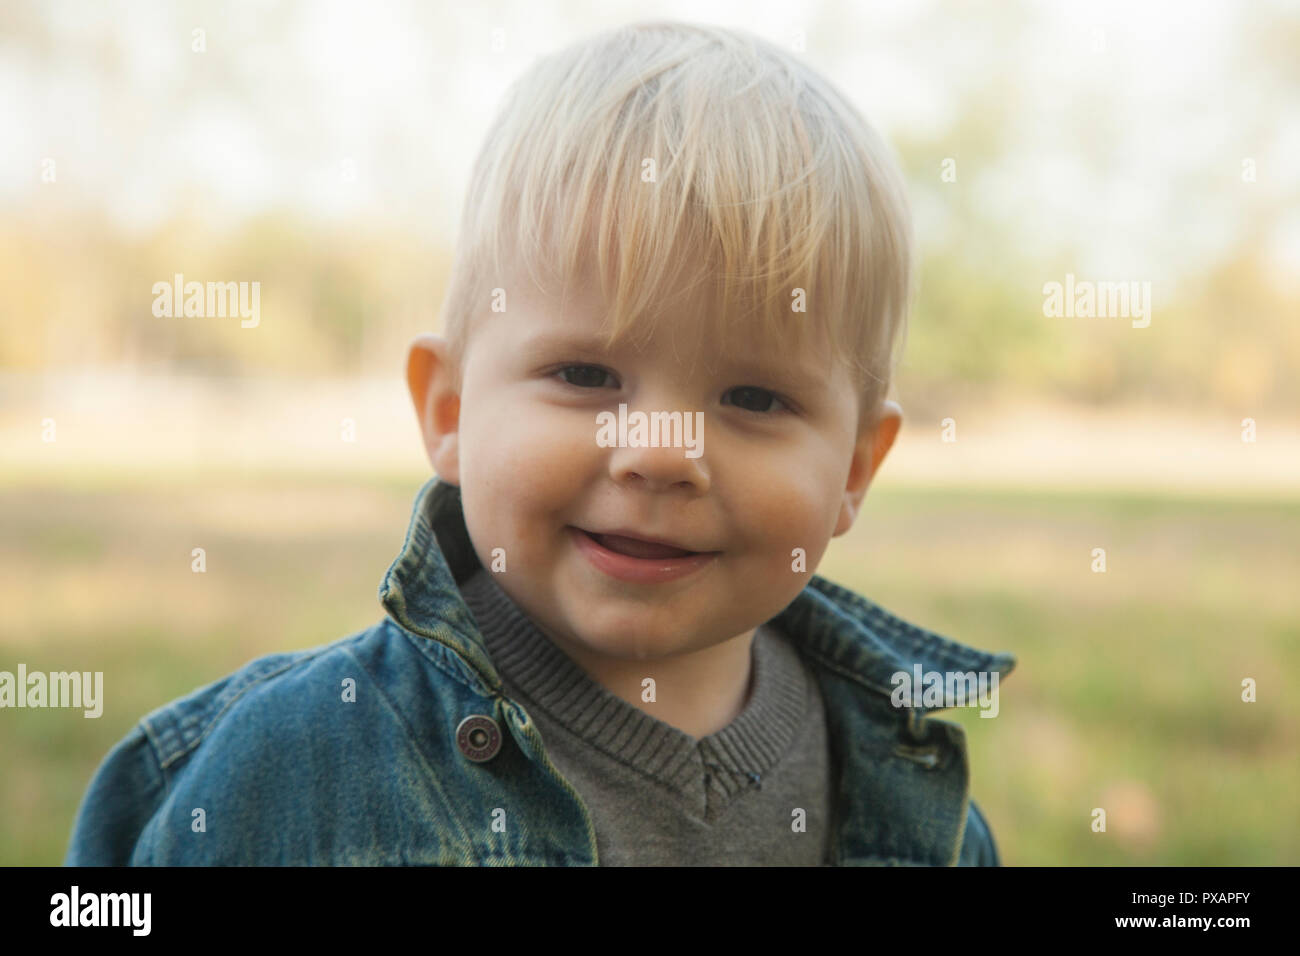 Blanco 1 año viejo muchacho rubio posando y mirando a una cámara de gran campo abierto de hierba con un colorido en otoño el clima. Clima: soleado y seco. Foto de stock